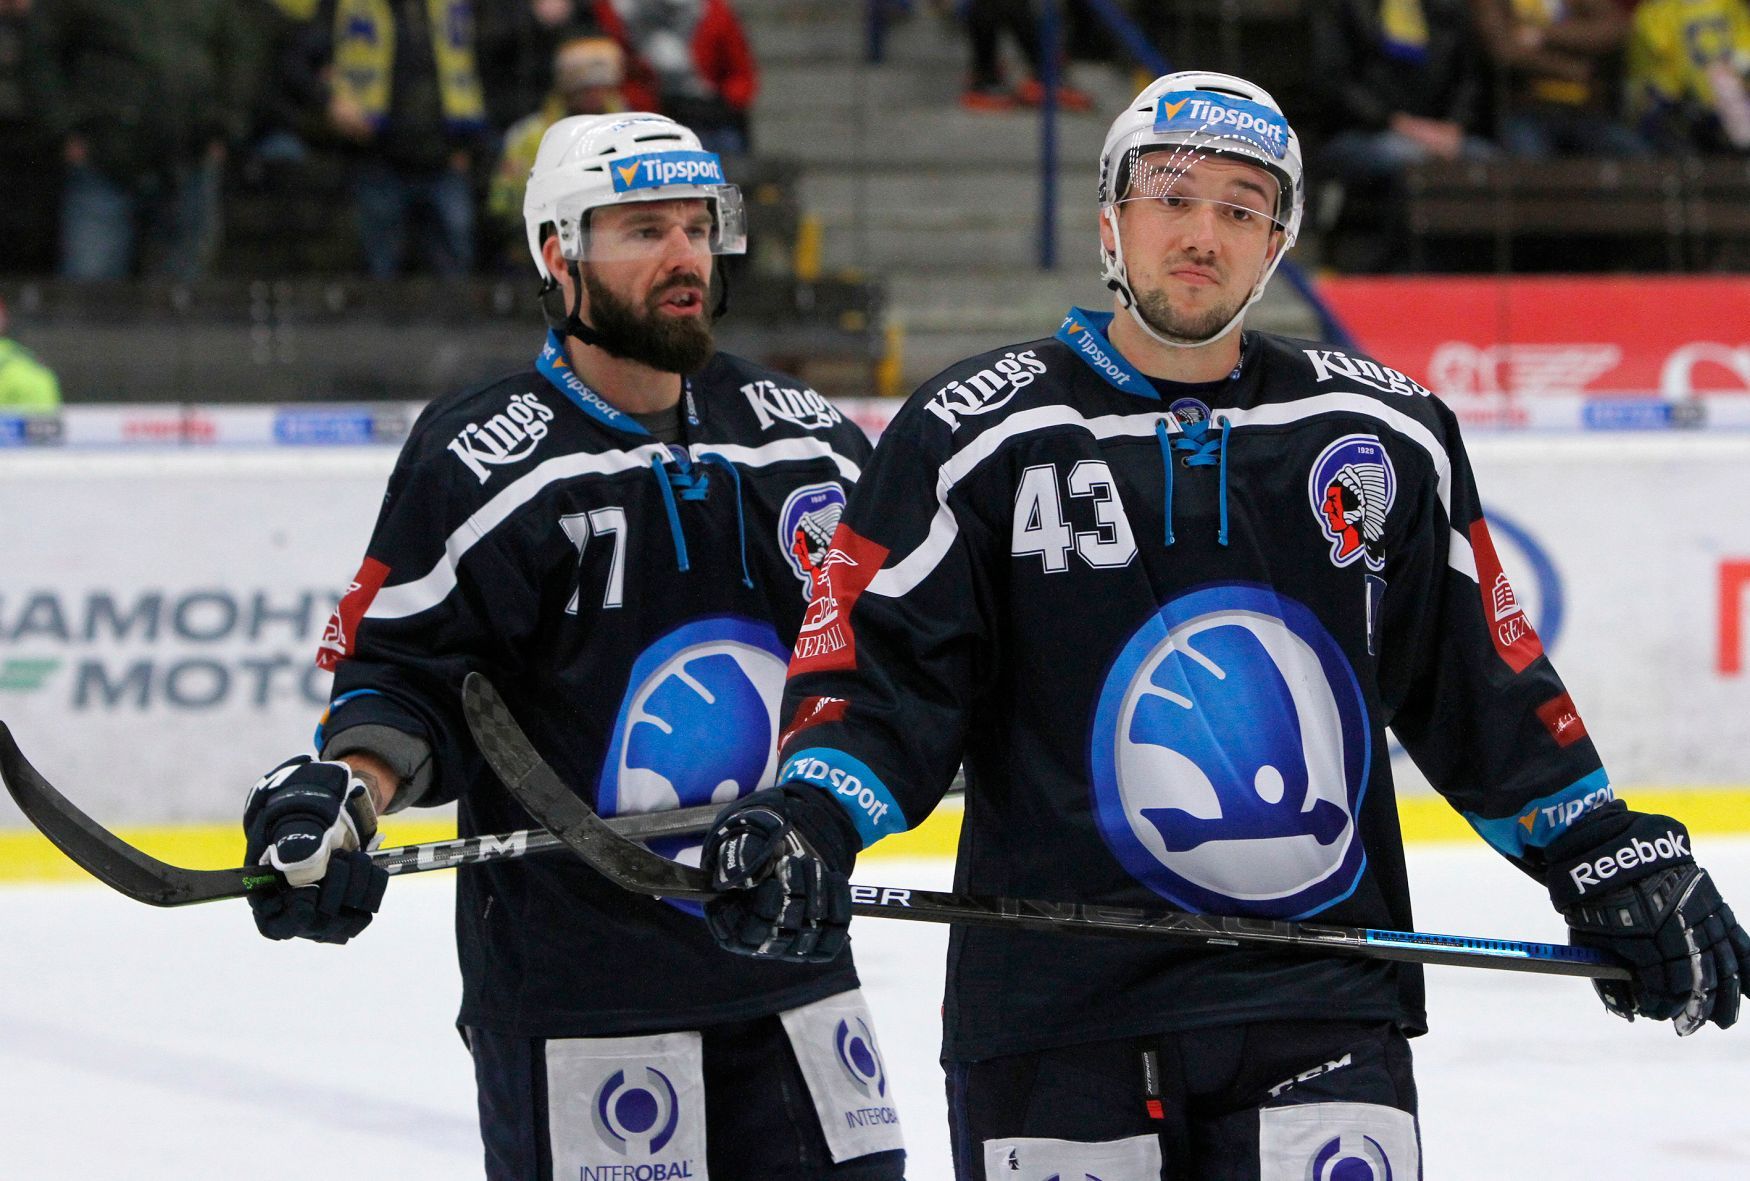 Hokejová extraliga 2018/19: Milan Gulaš (vlevo) a Jan Kovář z Plzně